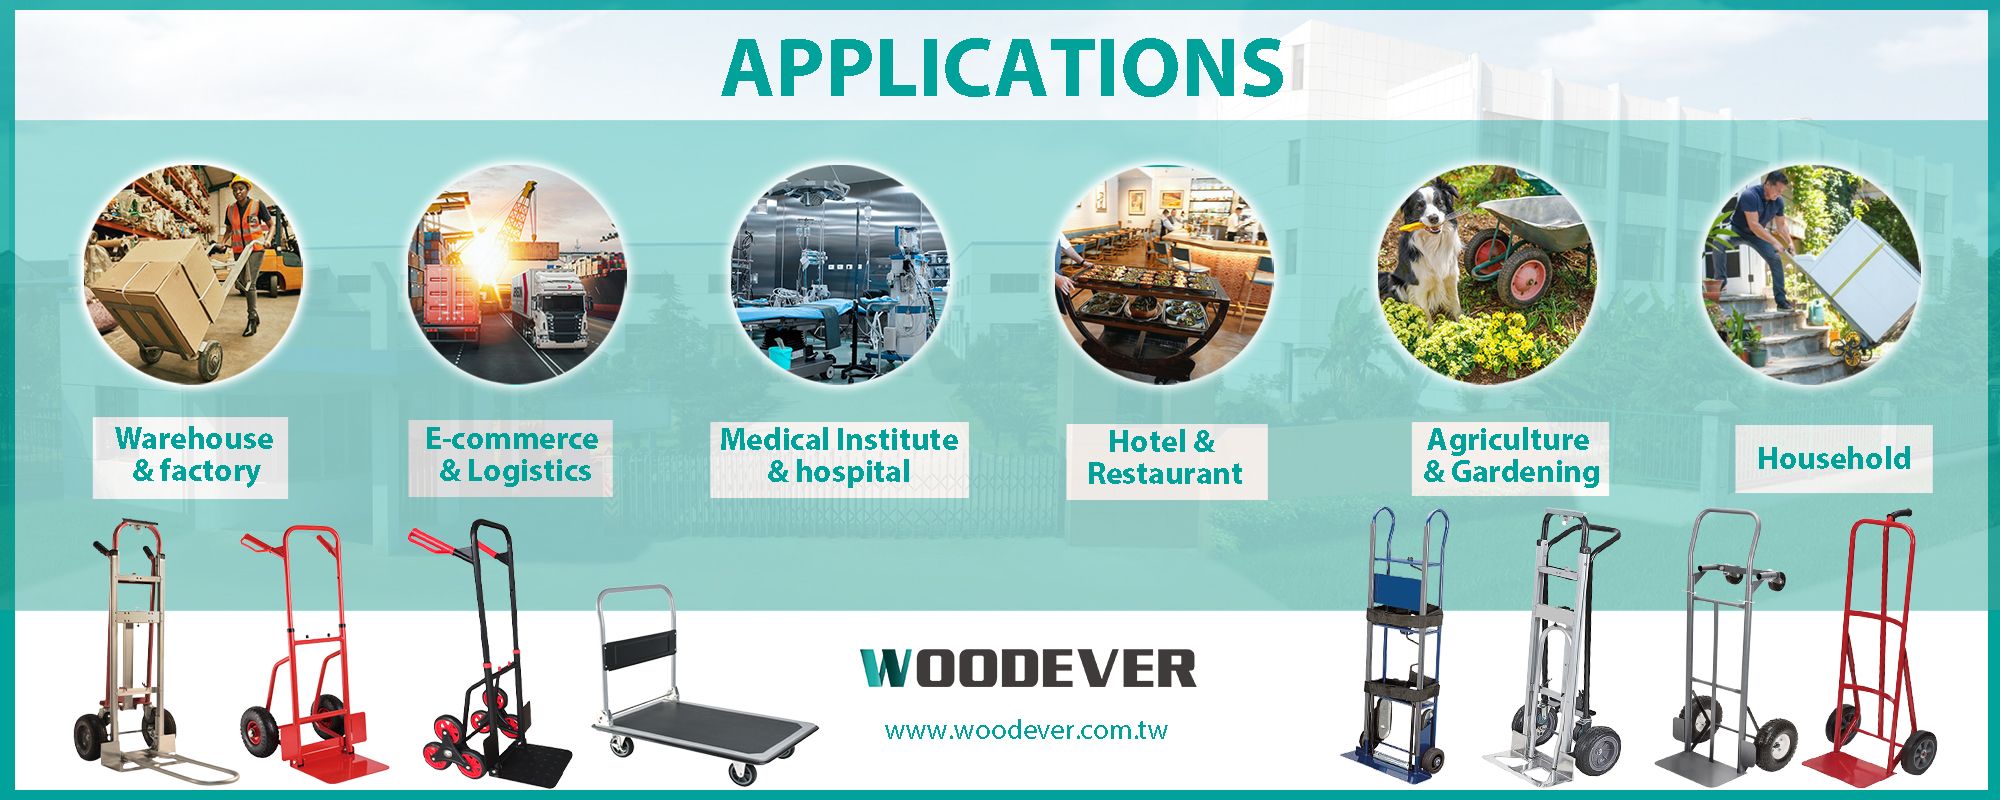 Applications de chariots de manutention dans diverses industries telles que la logistique, le médical, l'hôtellerie et la restauration